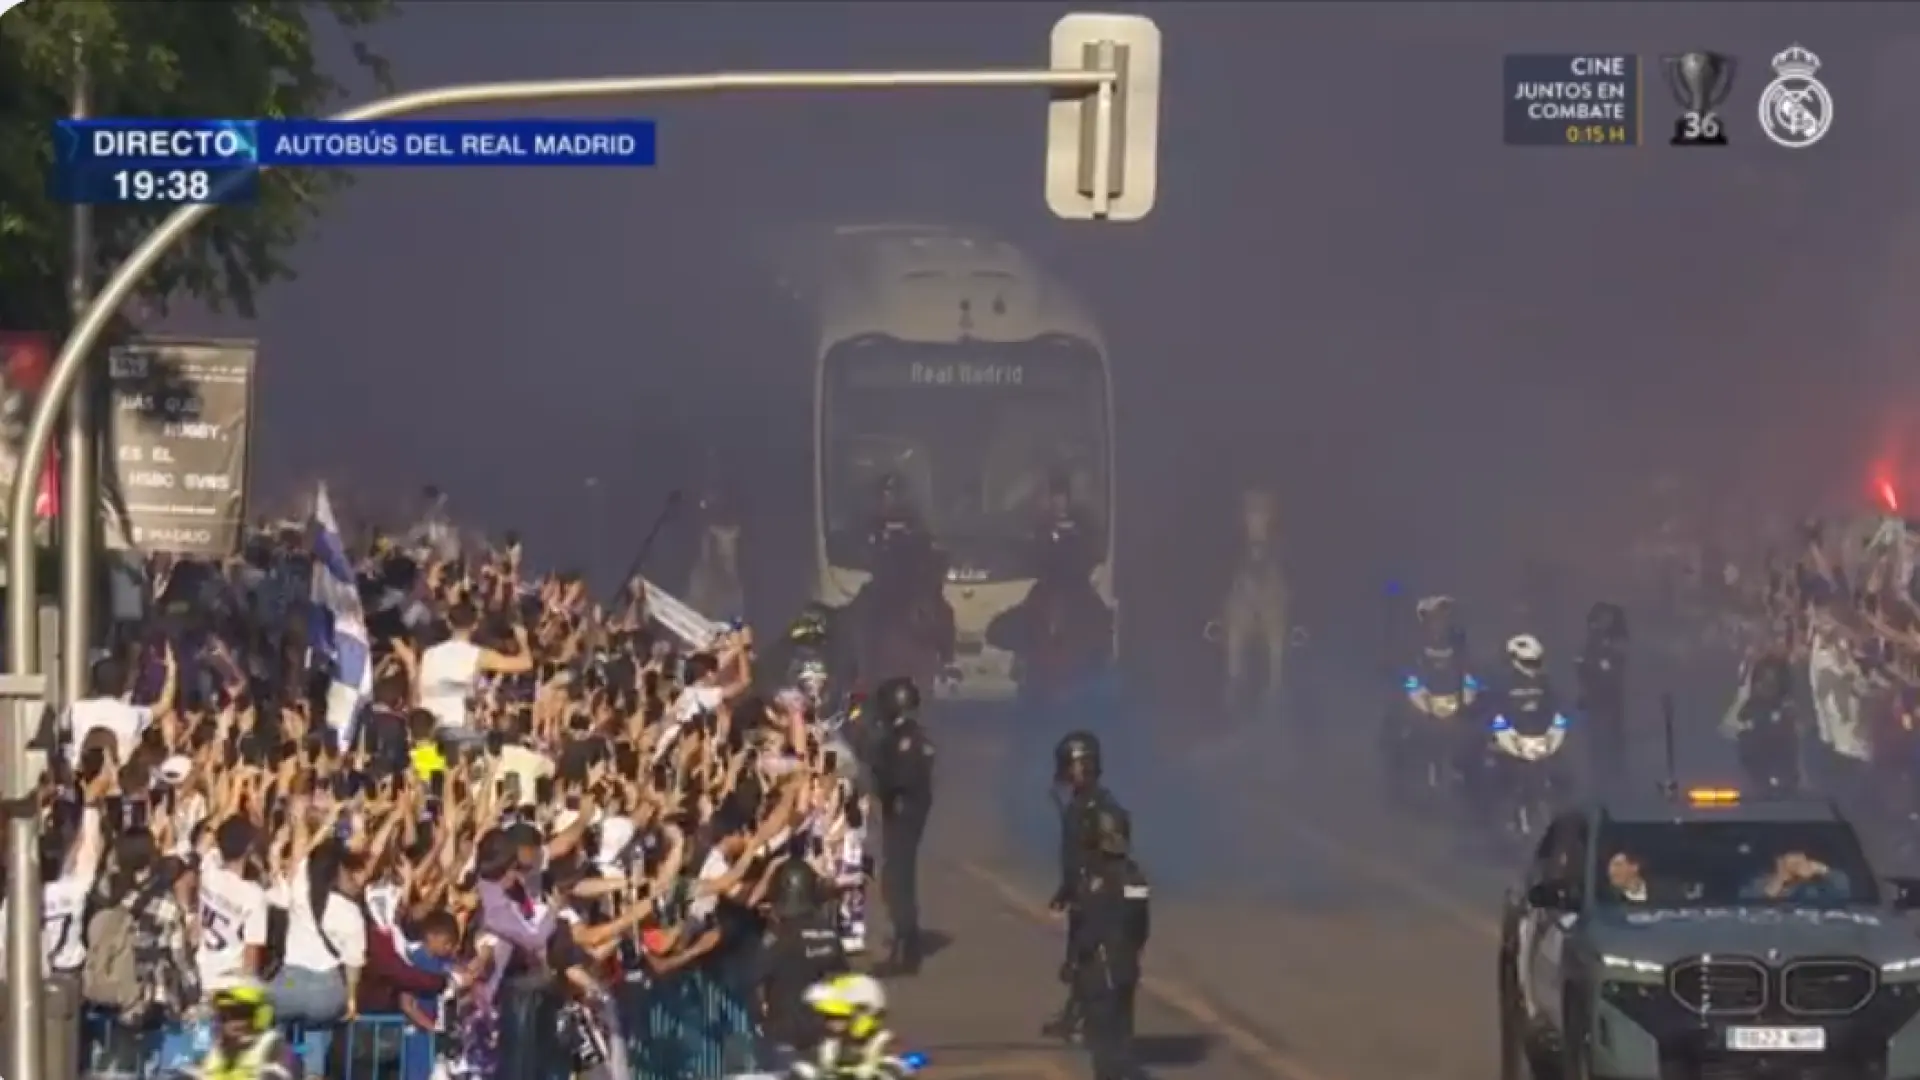 El apoteósico recibimiento al autobús del Real Madrid a su llegada al Santiago Bernabéu: "Nuestro corazón, nuestro escudo"